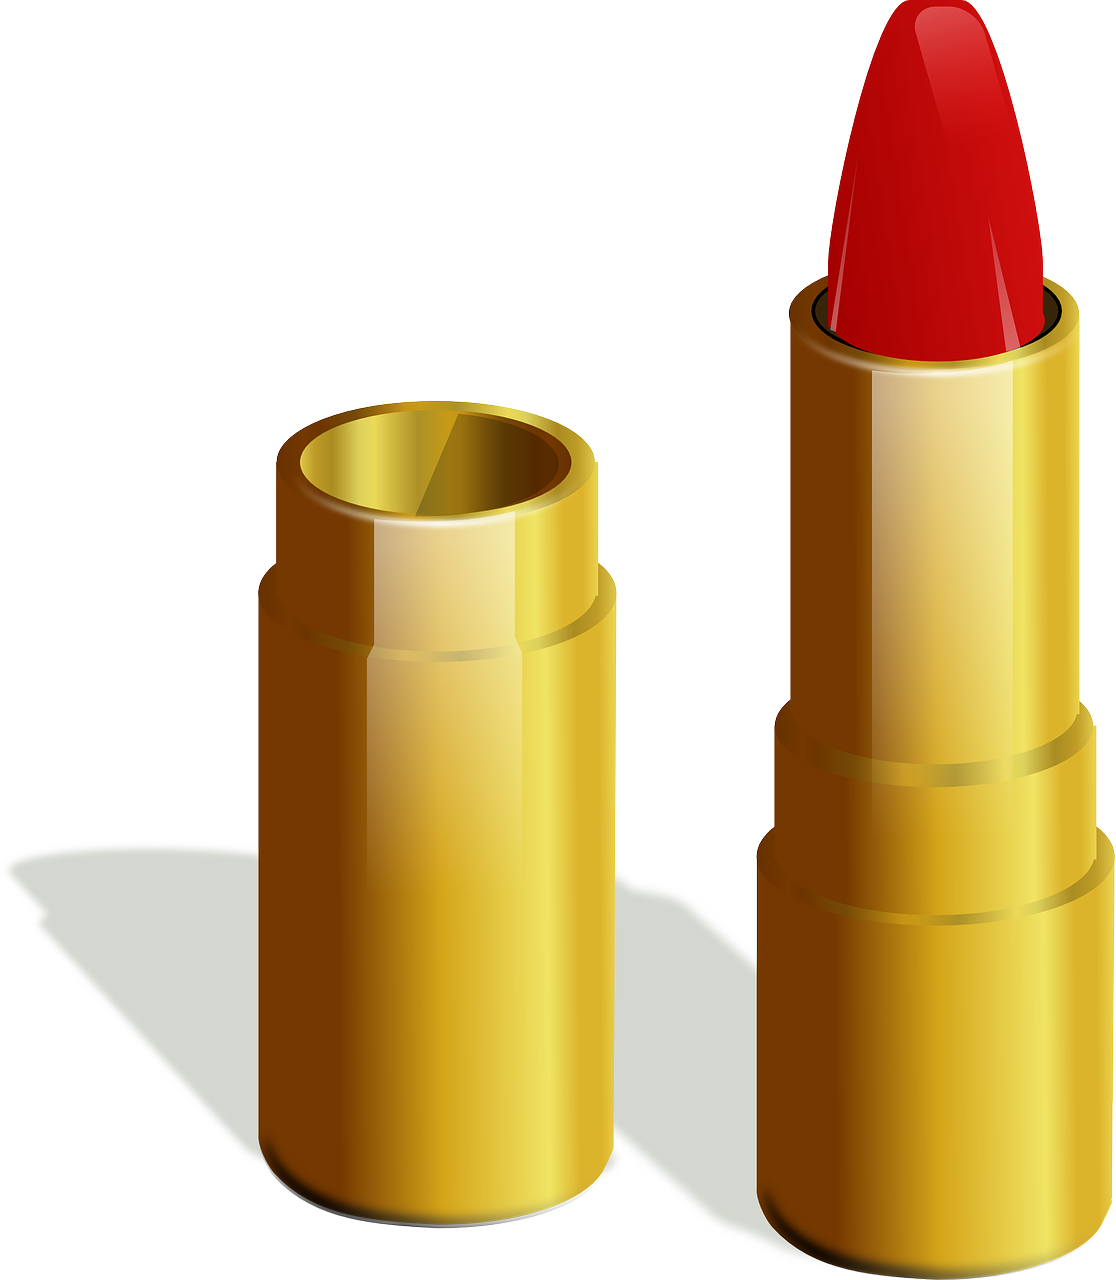 lipstick lip gloss cosmetics free photo